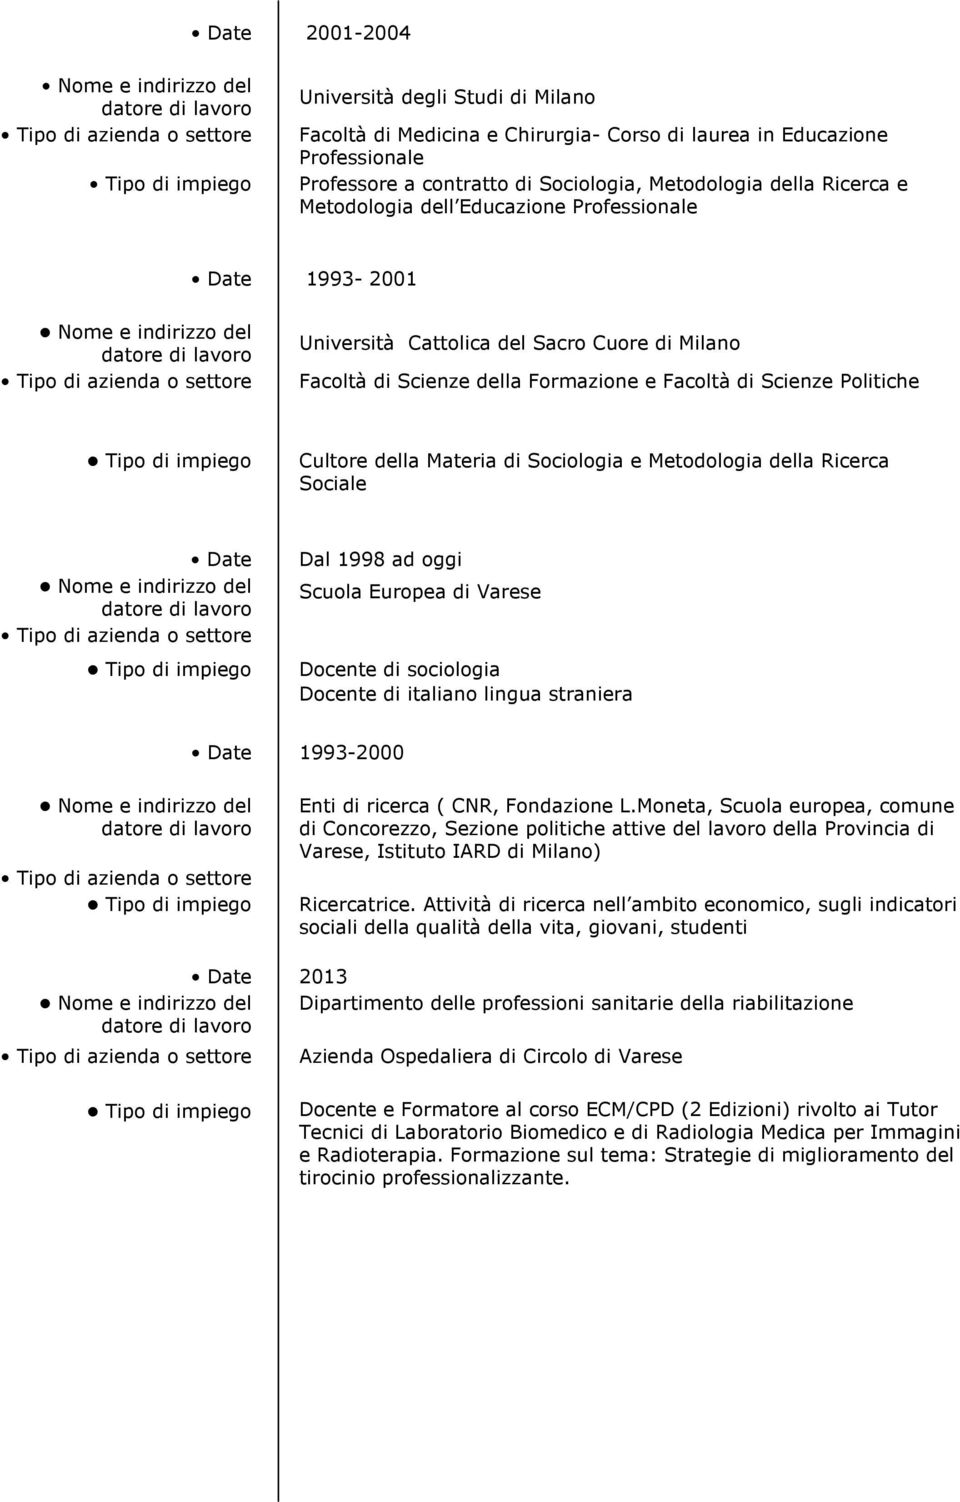 Sociologia e Metodologia della Ricerca Sociale Date Dal 1998 ad oggi Scuola Europea di Varese Docente di sociologia Docente di italiano lingua straniera Date 1993-2000 Enti di ricerca ( CNR,